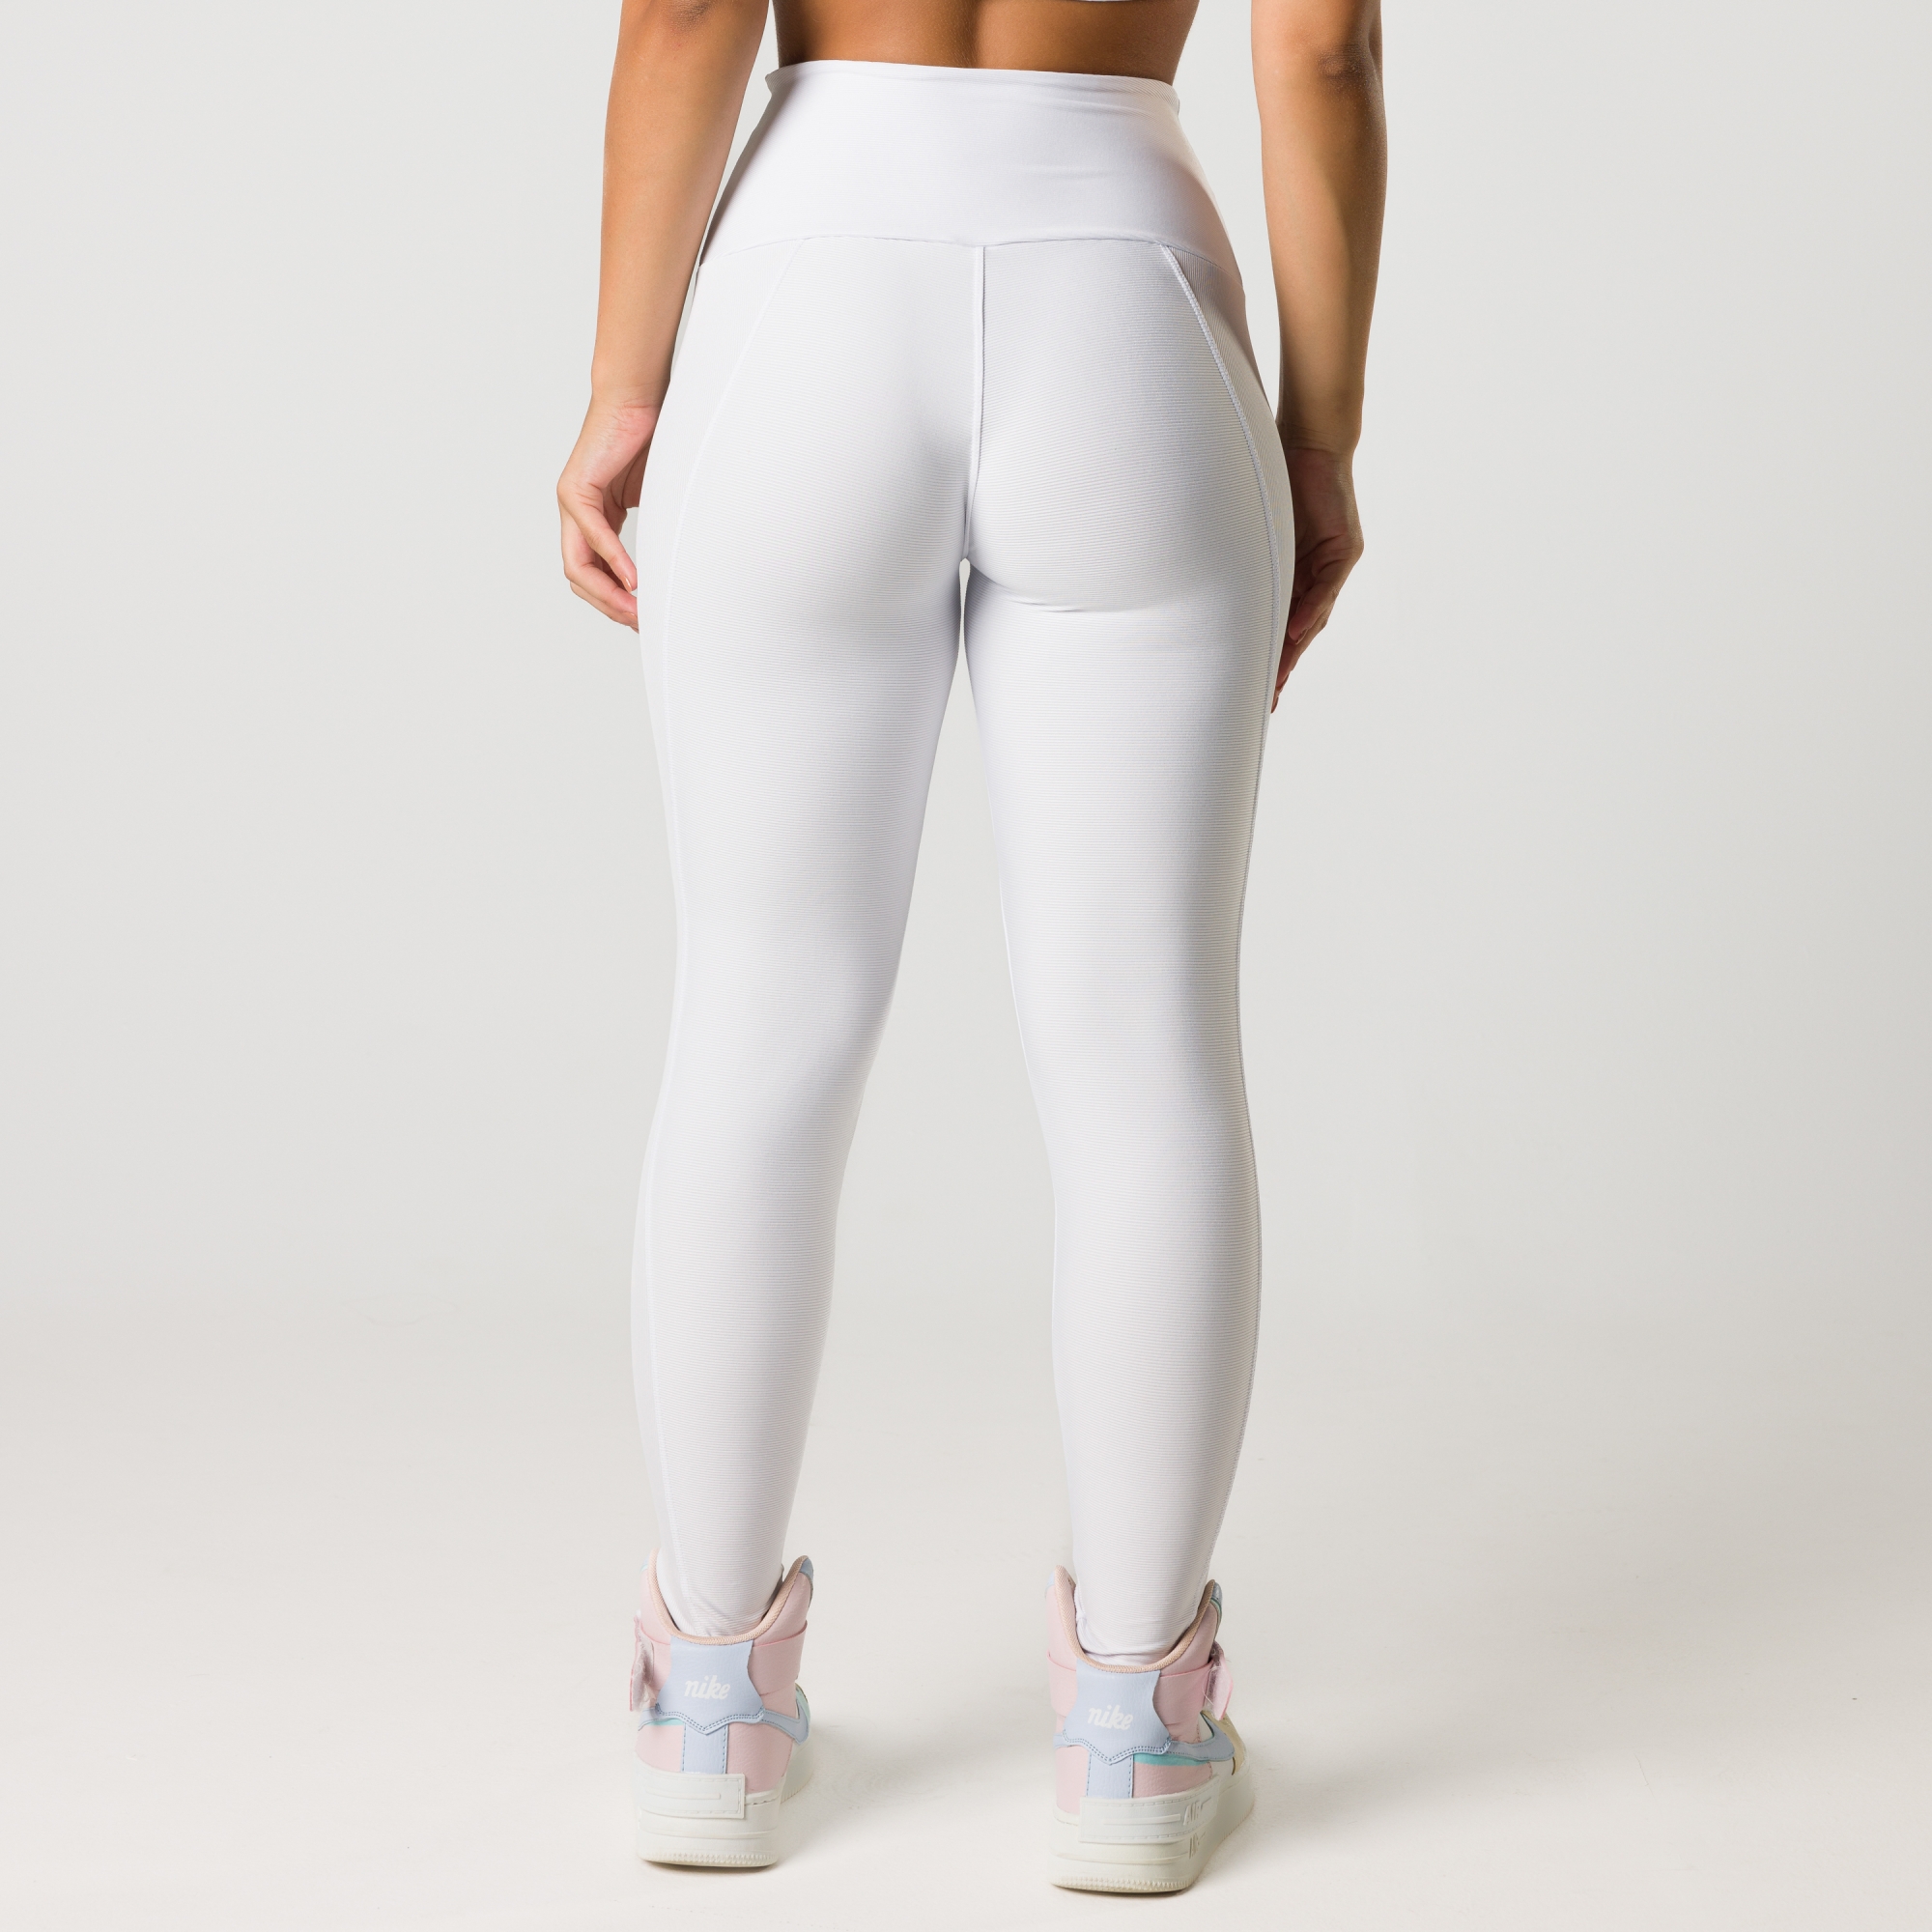 Calça Legging Feminina Cadarço Branca Tecido Canelado - Ava Fitness